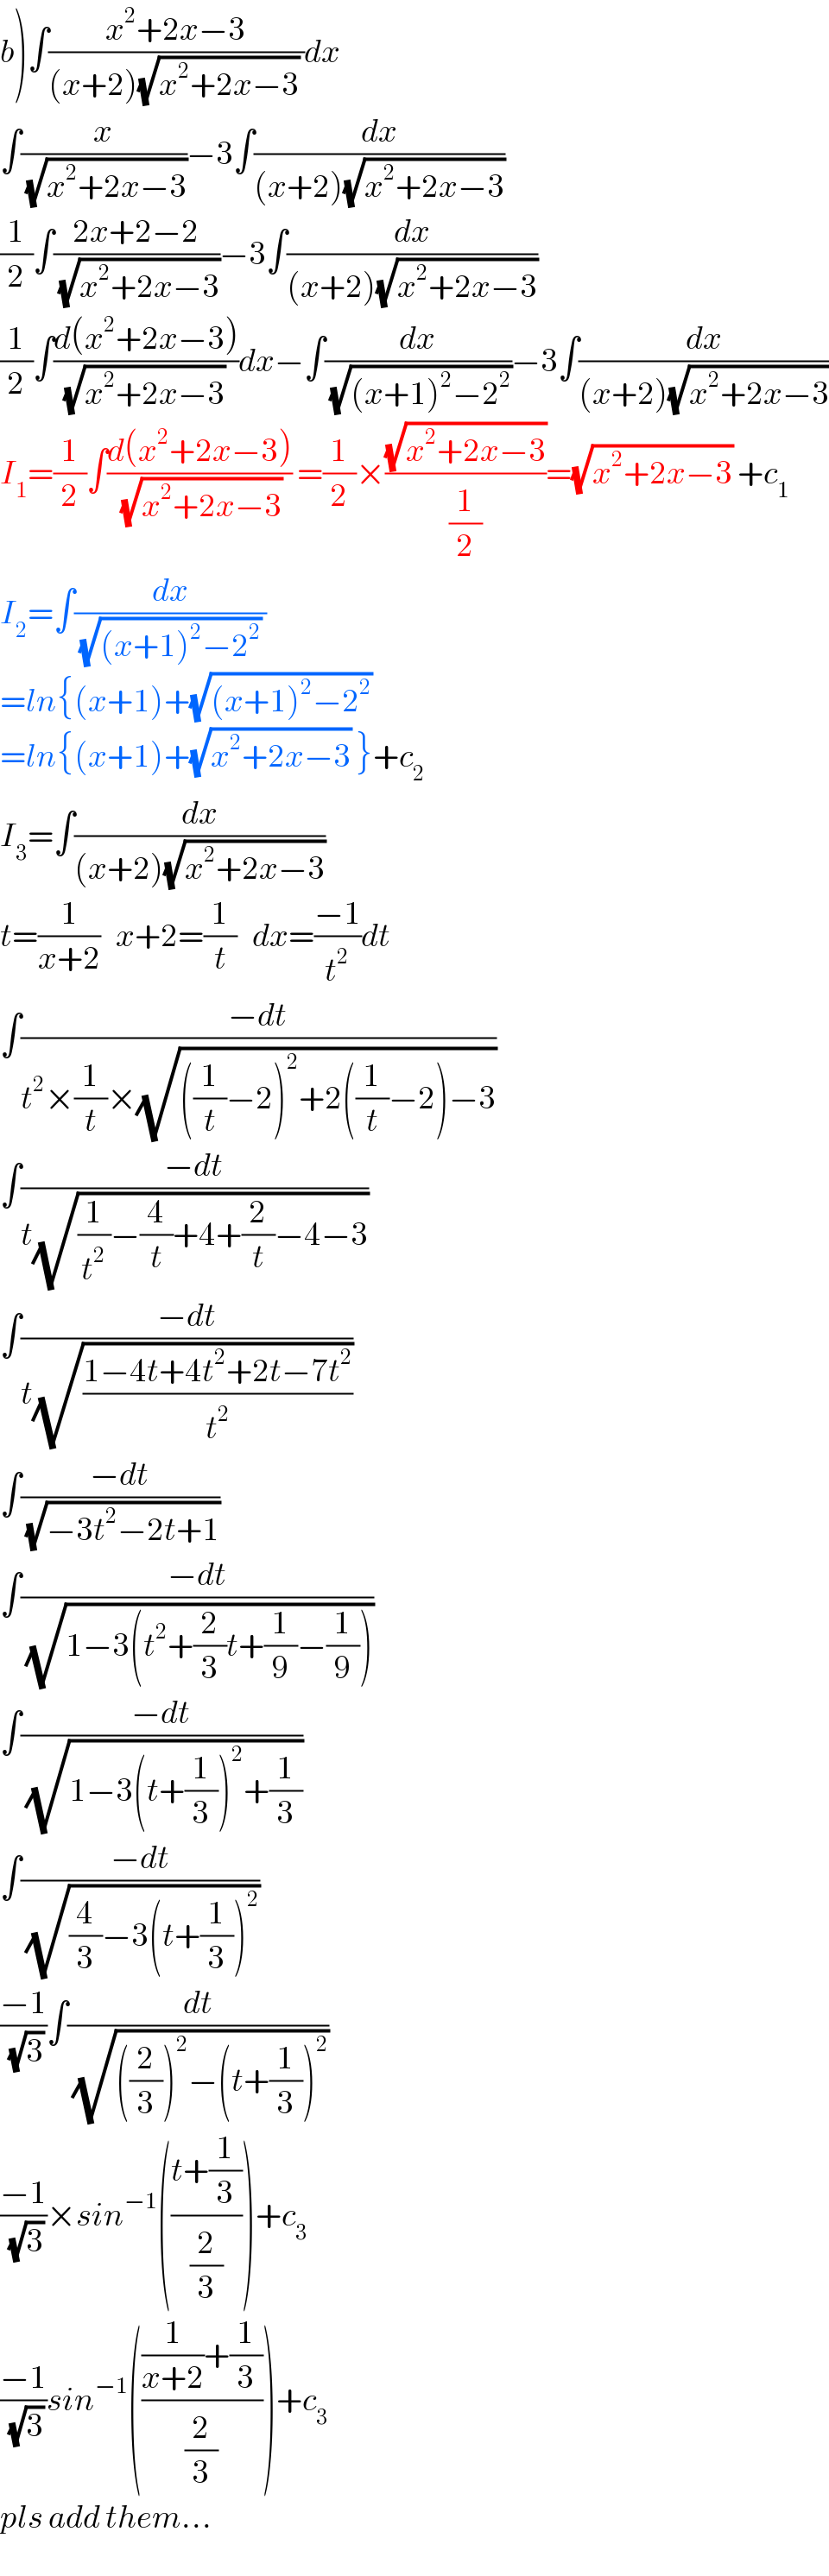 b)∫((x^2 +2x−3)/((x+2)(√(x^2 +2x−3)) ))dx  ∫(x/(√(x^2 +2x−3)))−3∫(dx/((x+2)(√(x^2 +2x−3))))  (1/2)∫((2x+2−2)/(√(x^2 +2x−3)))−3∫(dx/((x+2)(√(x^2 +2x−3))))  (1/2)∫((d(x^2 +2x−3))/((√(x^2 +2x−3)) ))dx−∫(dx/(√((x+1)^2 −2^2 )))−3∫(dx/((x+2)(√(x^2 +2x−3))))  I_1 =(1/2)∫((d(x^2 +2x−3))/(√(x^2 +2x−3))) =(1/2)×((√(x^2 +2x−3))/(1/2))=(√(x^2 +2x−3)) +c_1   I_2 =∫(dx/((√((x+1)^2 −2^2 )) ))  =ln{(x+1)+(√((x+1)^2 −2^2 ))   =ln{(x+1)+(√(x^2 +2x−3)) }+c_2   I_3 =∫(dx/((x+2)(√(x^2 +2x−3))))  t=(1/(x+2))   x+2=(1/t)   dx=((−1)/t^2 )dt  ∫((−dt)/(t^2 ×(1/t)×(√(((1/t)−2)^2 +2((1/t)−2)−3))))  ∫((−dt)/(t(√((1/t^2 )−(4/t)+4+(2/t)−4−3))))  ∫((−dt)/(t(√((1−4t+4t^2 +2t−7t^2 )/t^2 ))))  ∫((−dt)/(√(−3t^2 −2t+1)))  ∫((−dt)/(√(1−3(t^2 +(2/3)t+(1/9)−(1/9)))))  ∫((−dt)/(√(1−3(t+(1/3))^2 +(1/3))))  ∫((−dt)/(√((4/3)−3(t+(1/3))^2 )))  ((−1)/(√3))∫(dt/(√(((2/3))^2 −(t+(1/3))^2 )))  ((−1)/(√3))×sin^(−1) (((t+(1/3))/(2/3)))+c_3   ((−1)/(√3))sin^(−1) ((((1/(x+2))+(1/3))/(2/3)))+c_3   pls add them...  